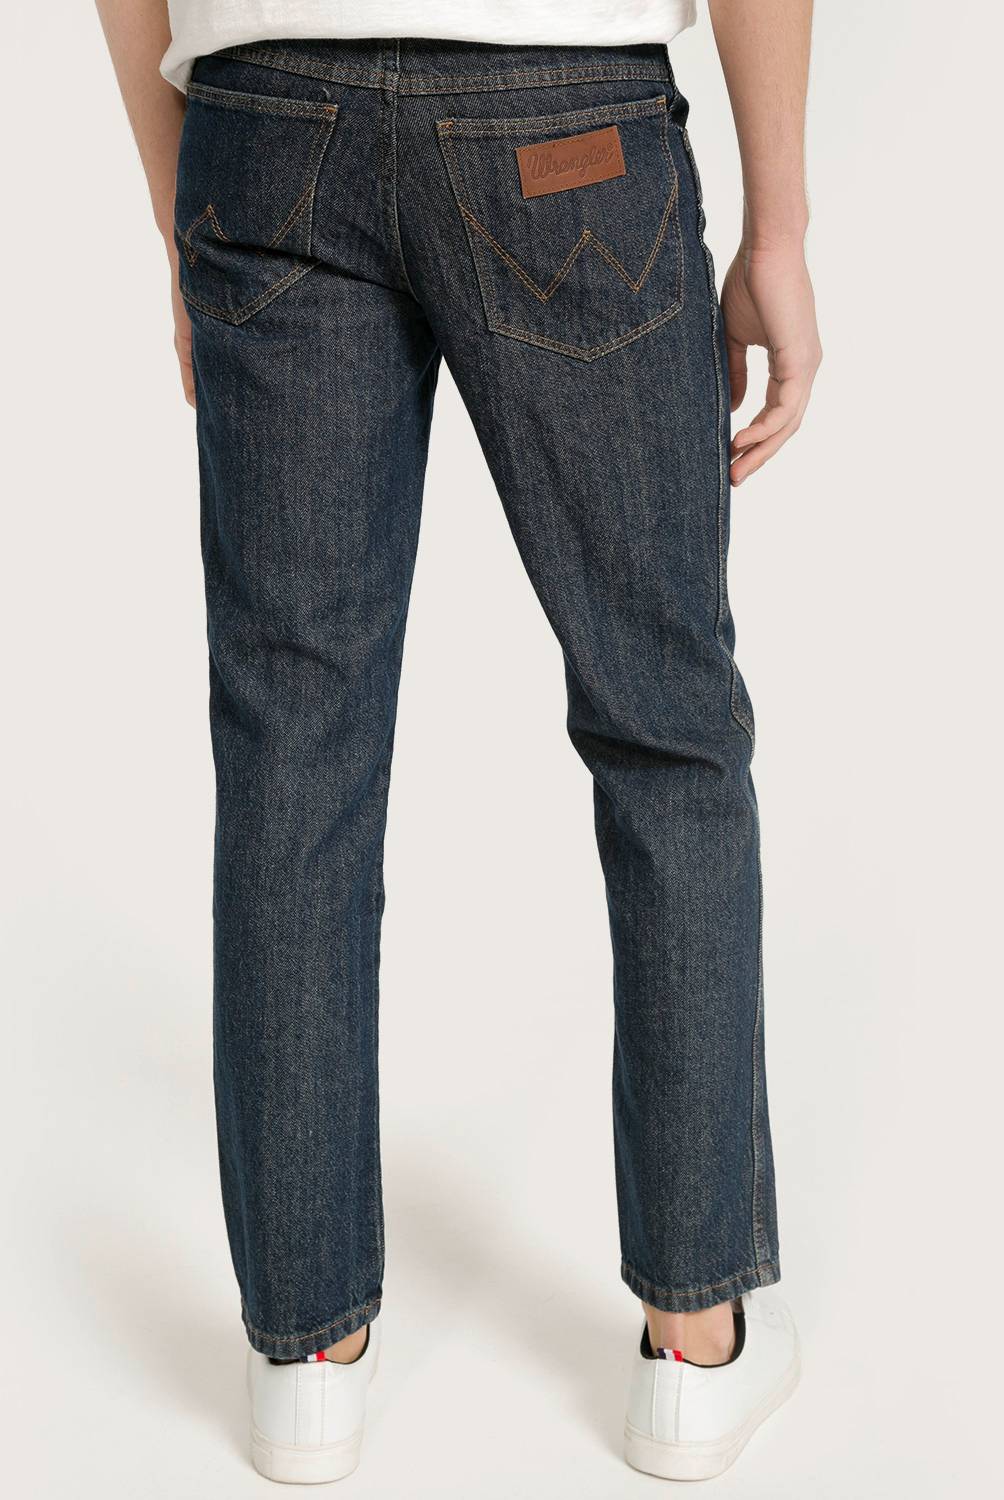 WRANGLER - Wrangler Jeans Texas Regular Fit Hombre